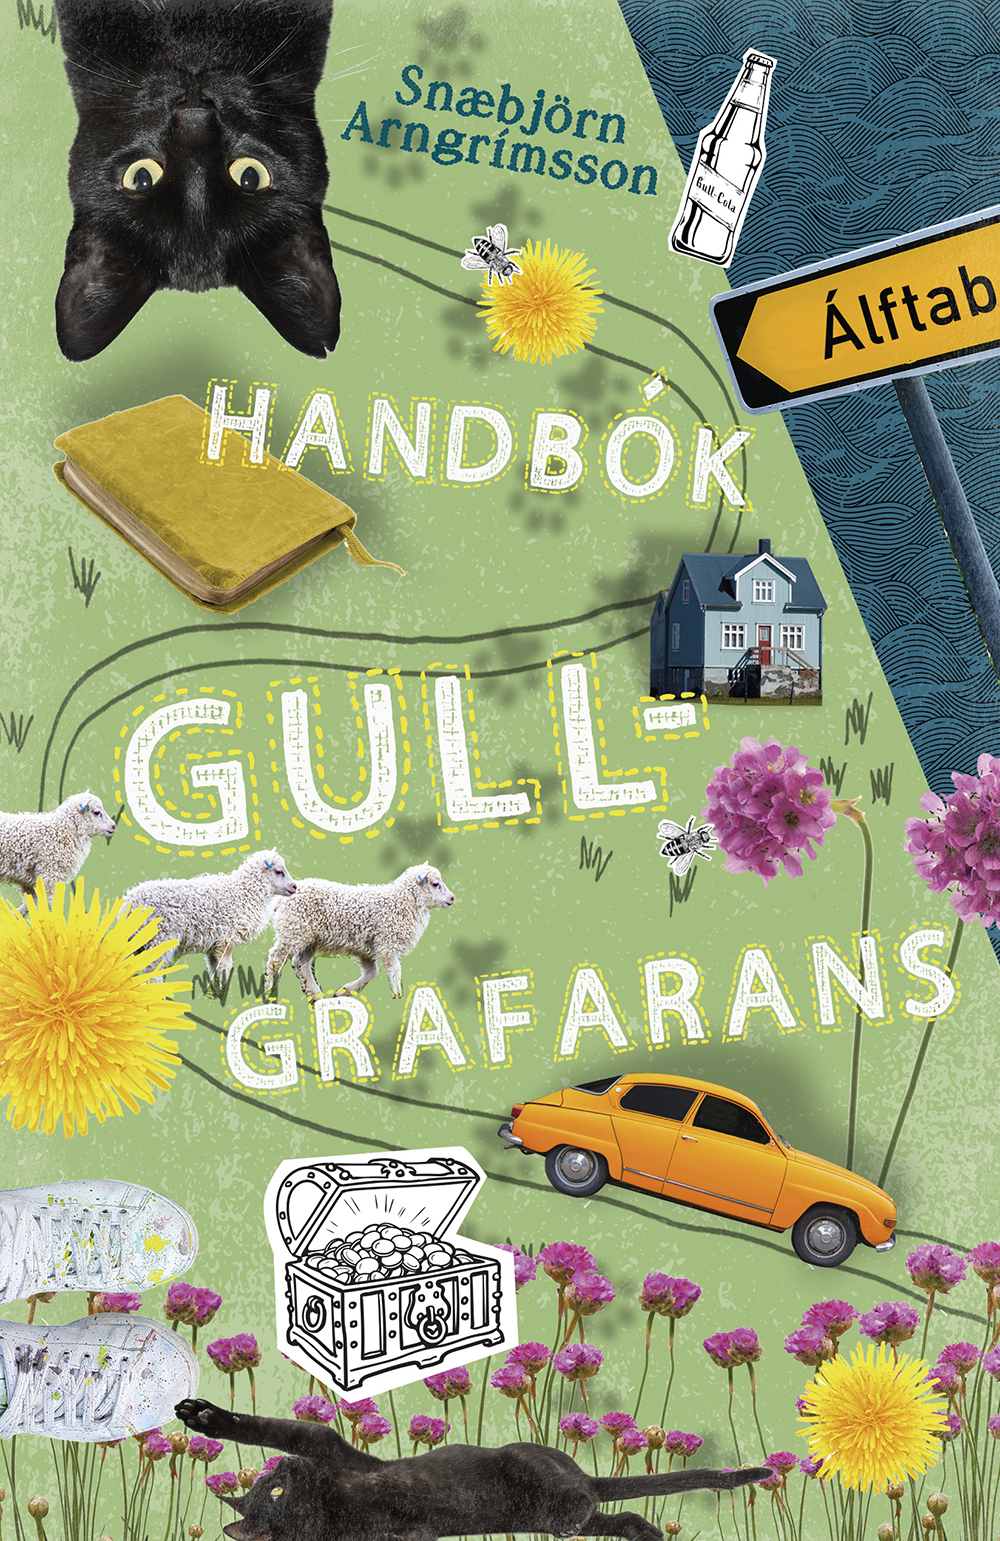 Handbok_gullgrafarans_72